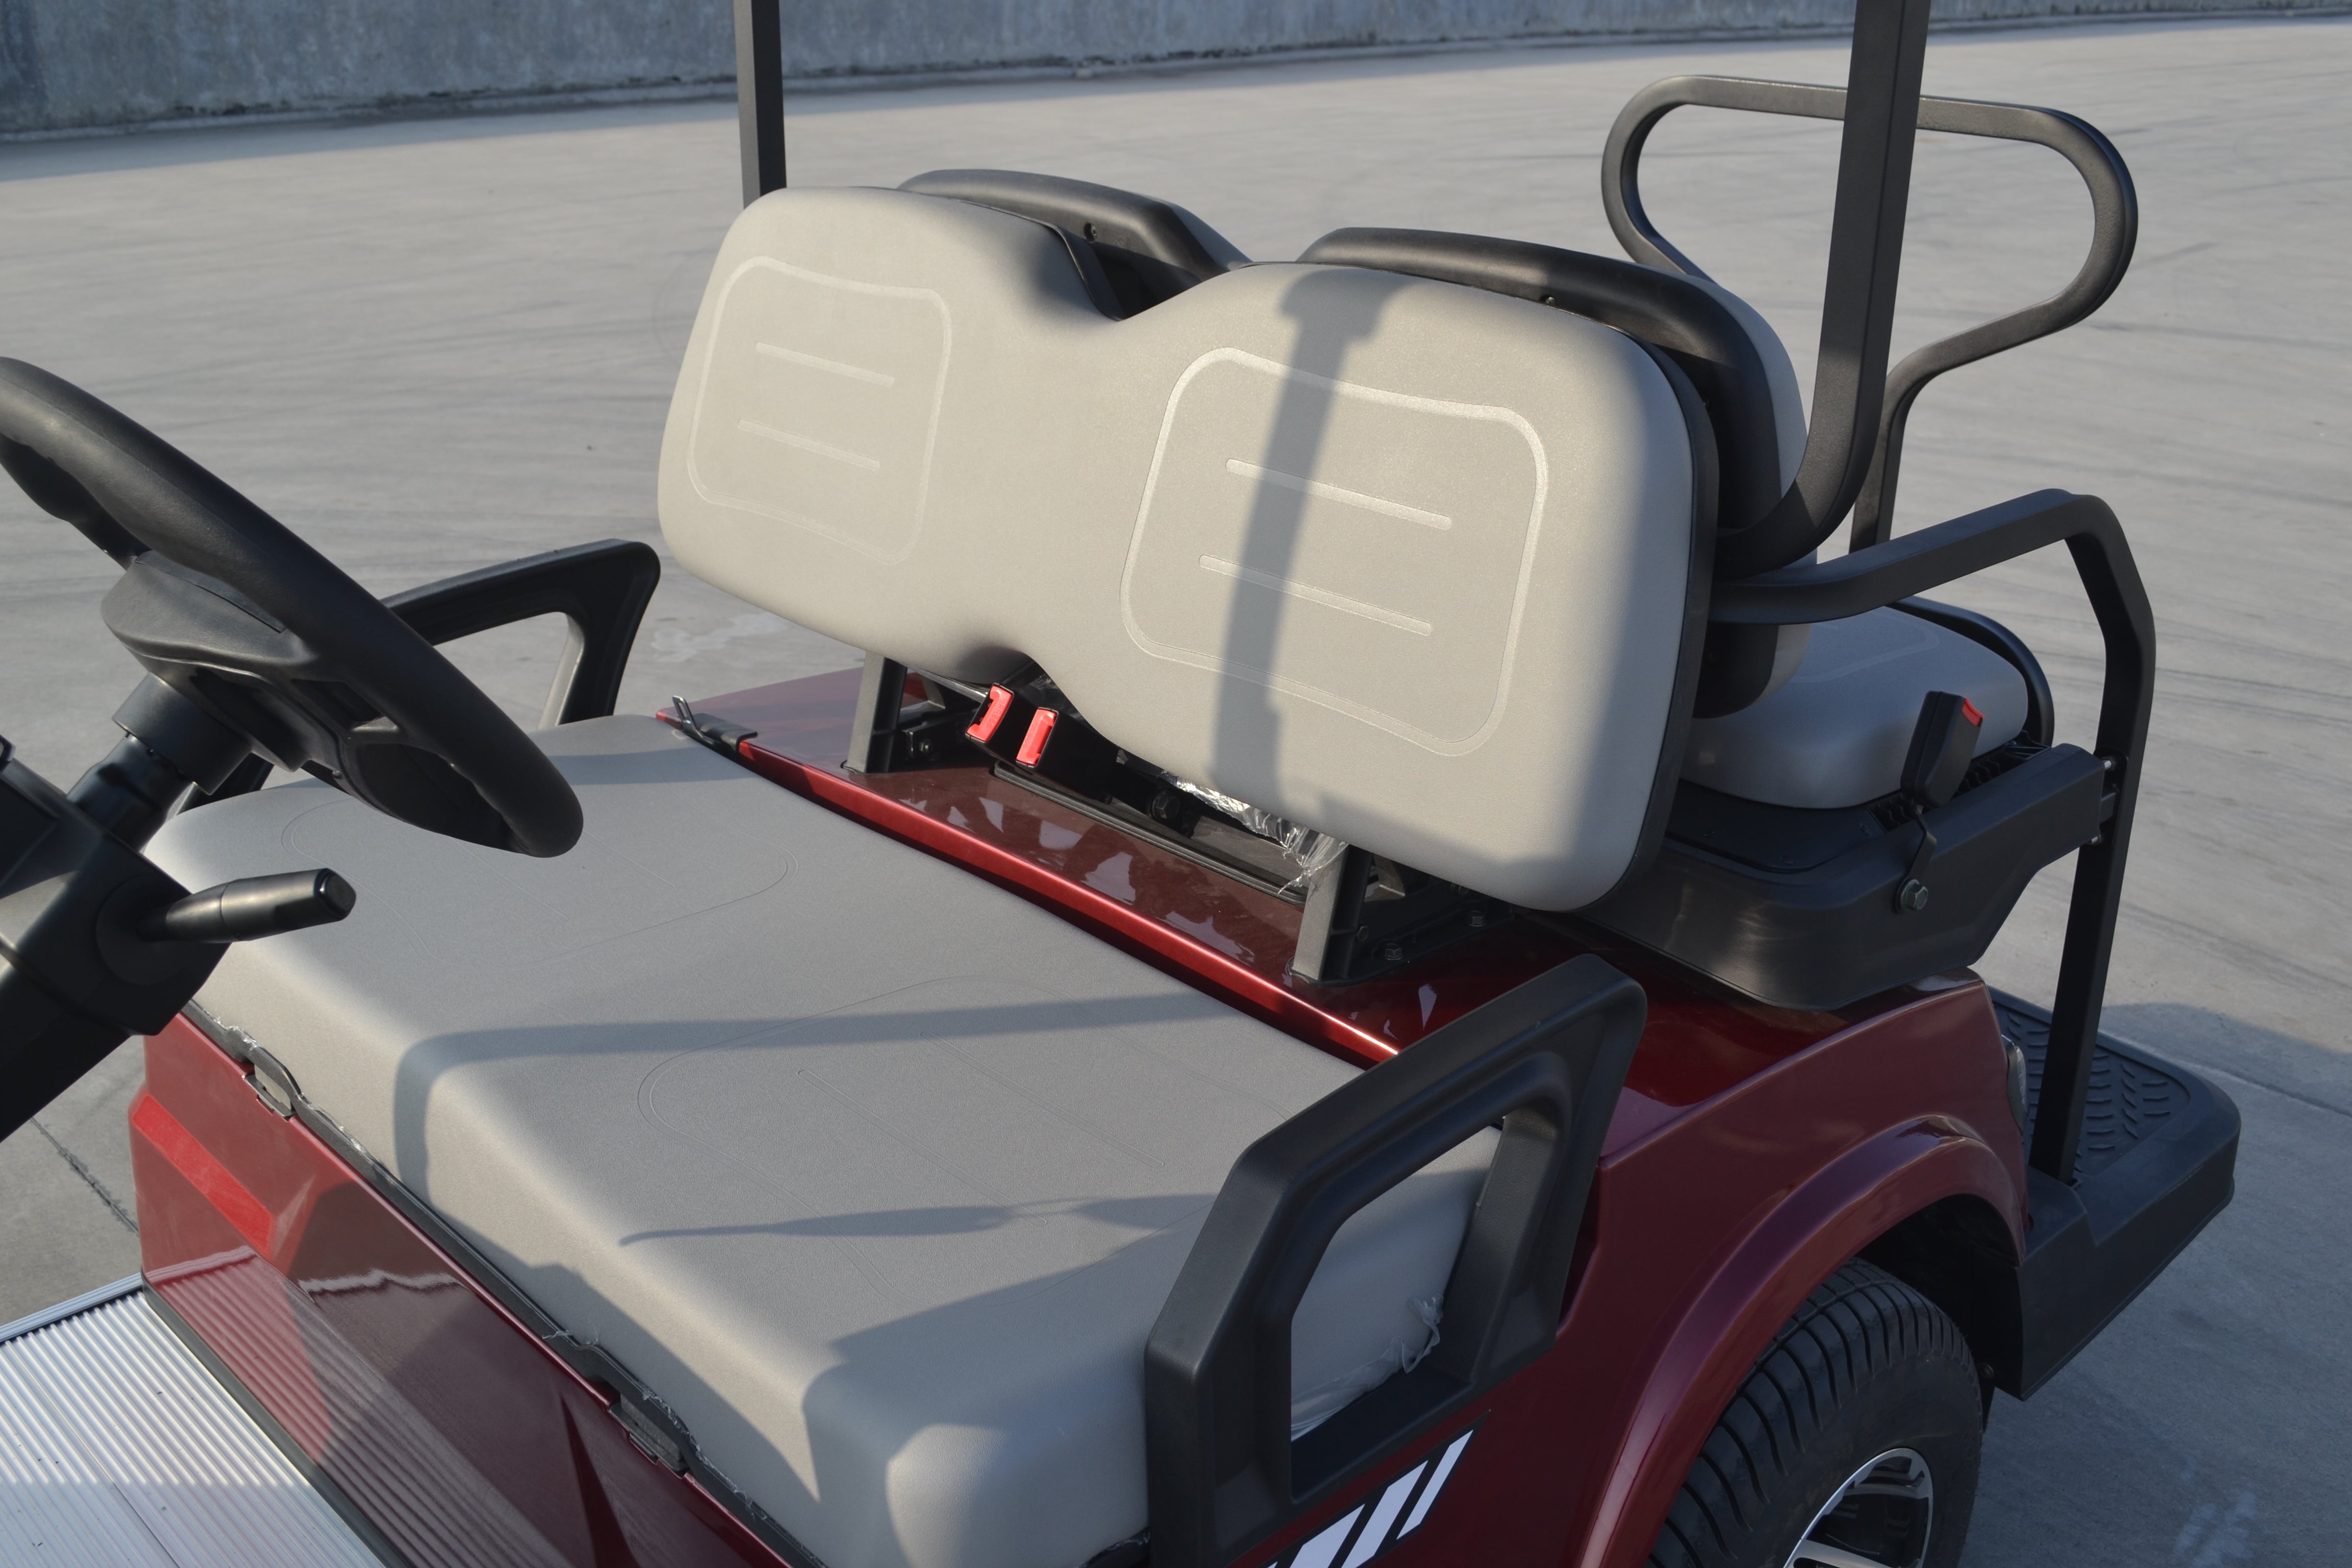 ECAR LT-A827.2+2 - 4 Seaters Golf Cart